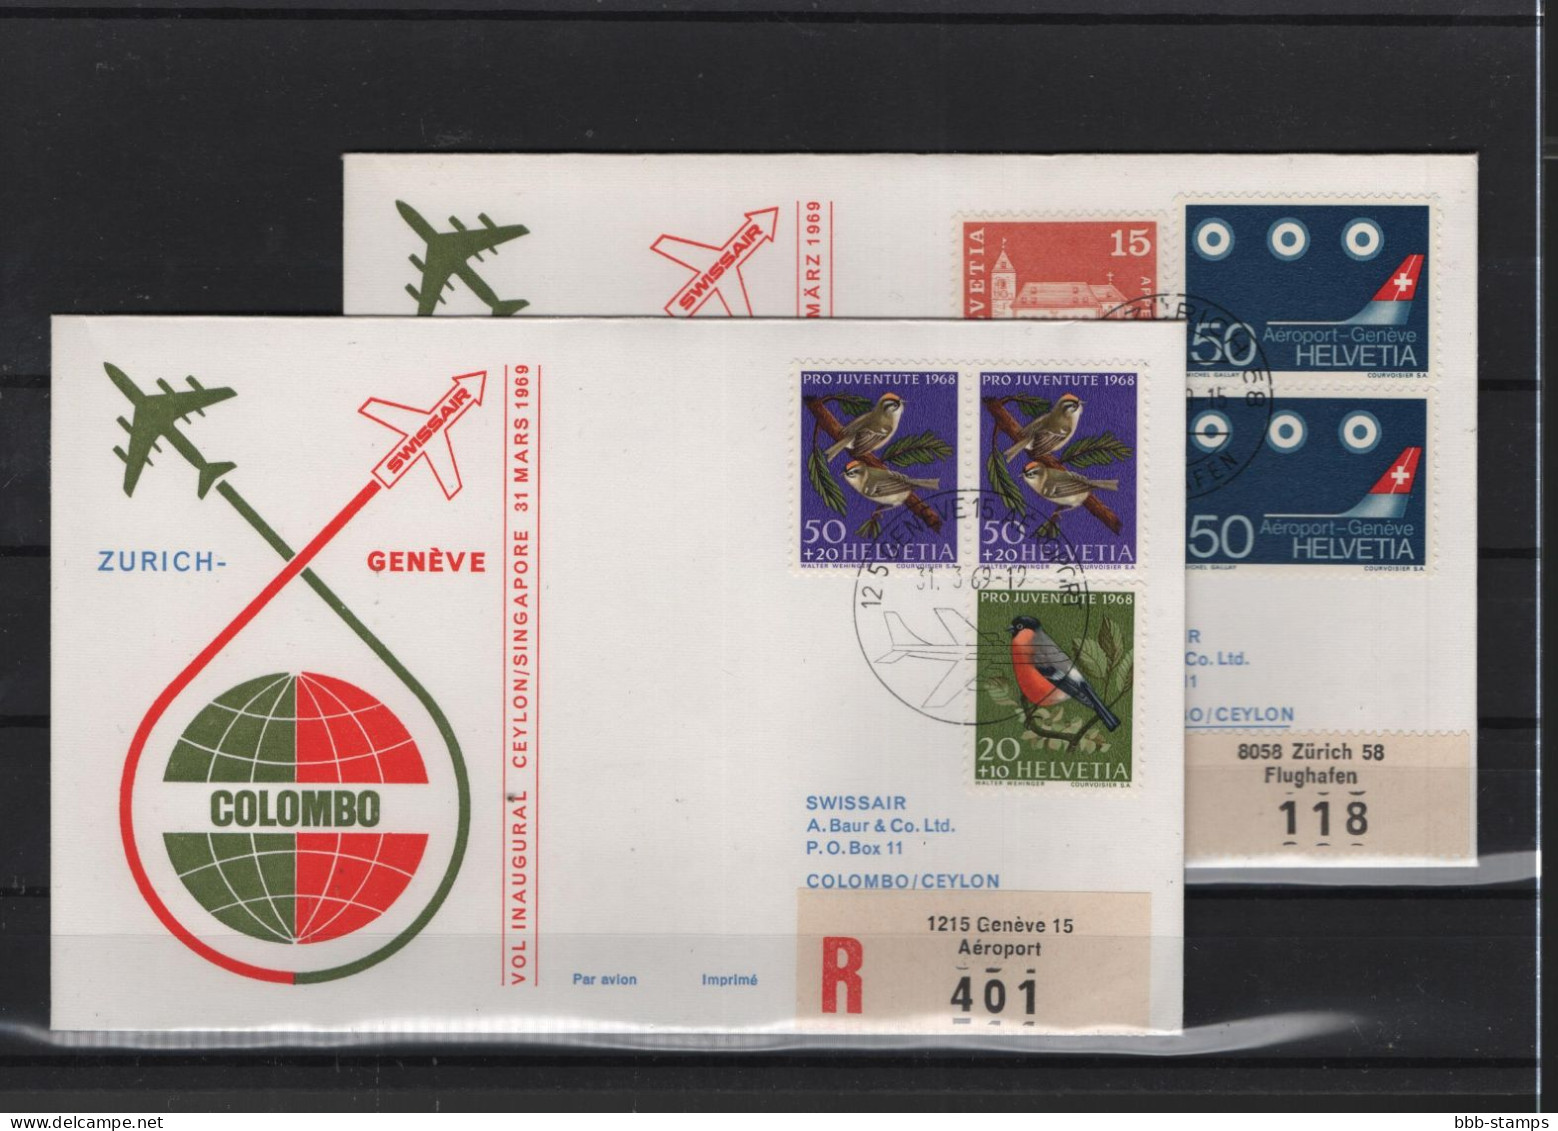 Schweiz Air Mail Swissair  FFC  31.3.1969 Zürich - Genf - Colombo VV - Premiers Vols